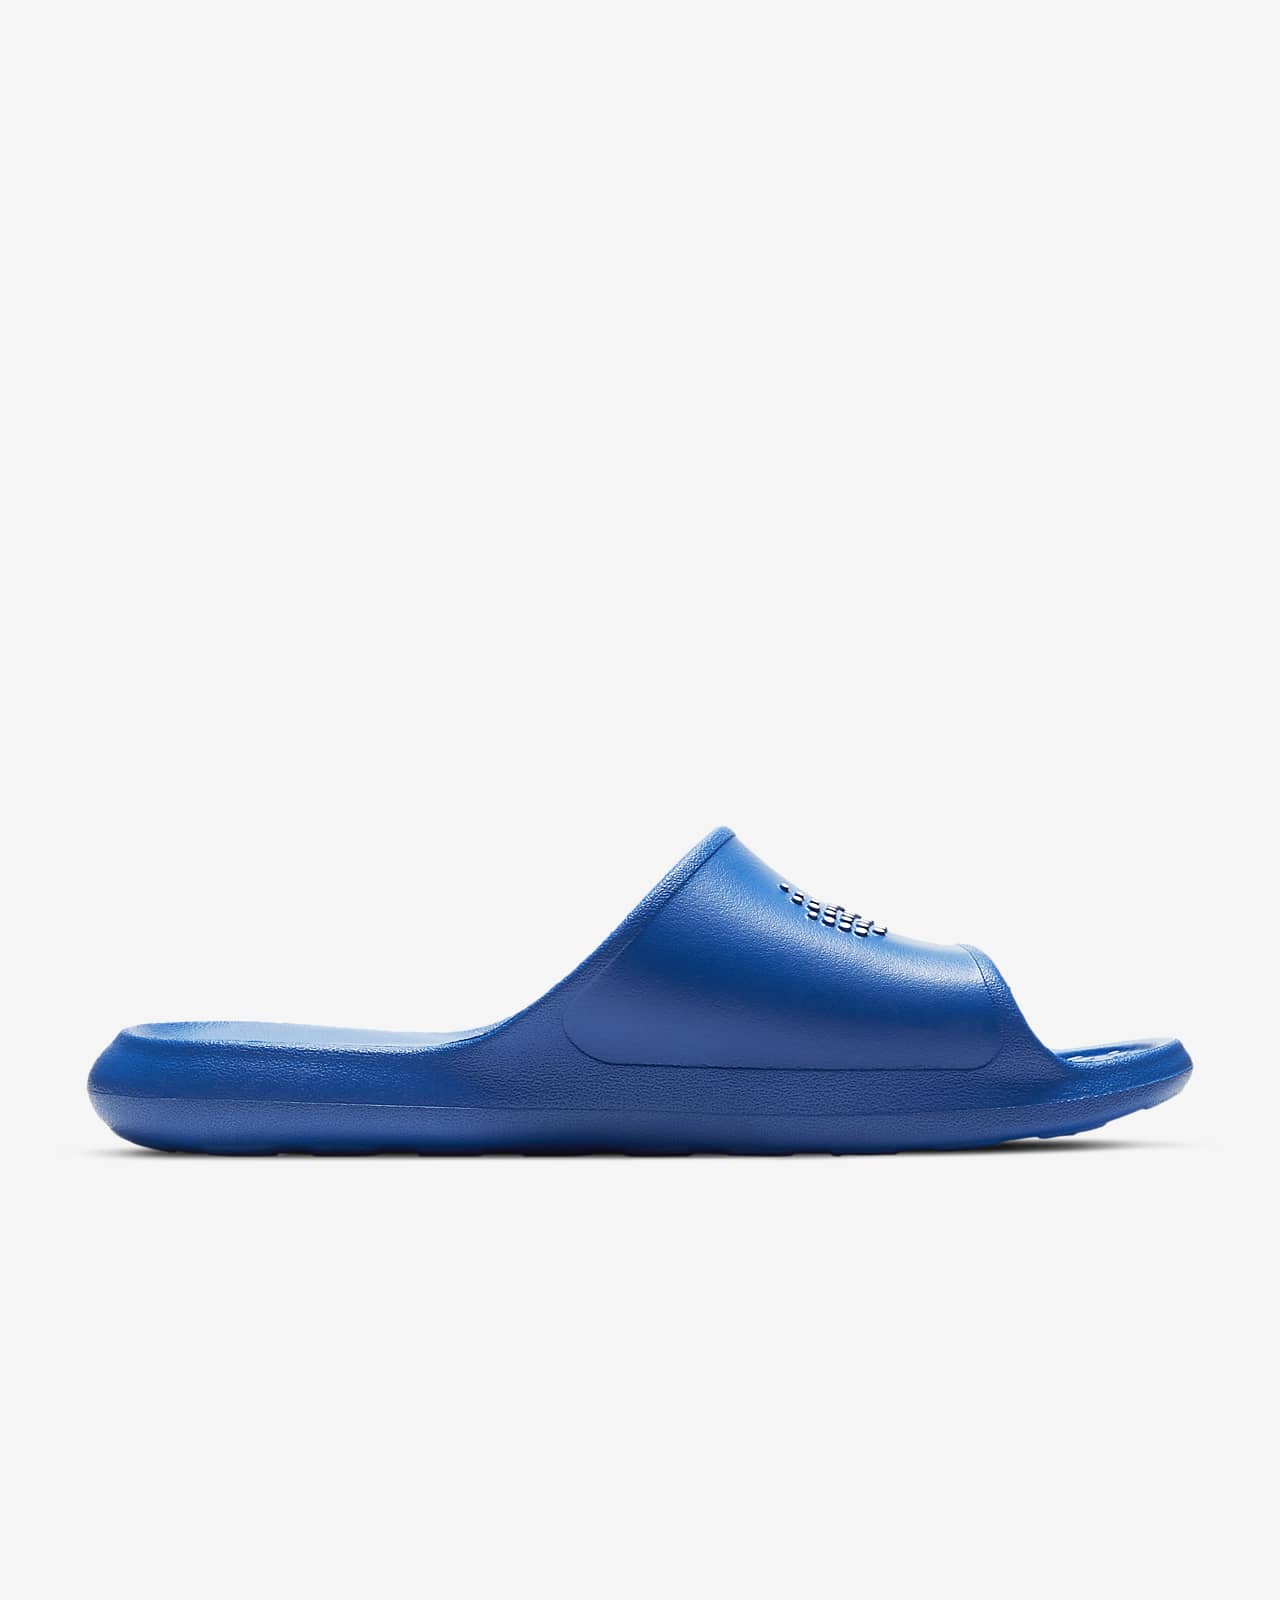 Nike Victori One Men's Shower Slide 